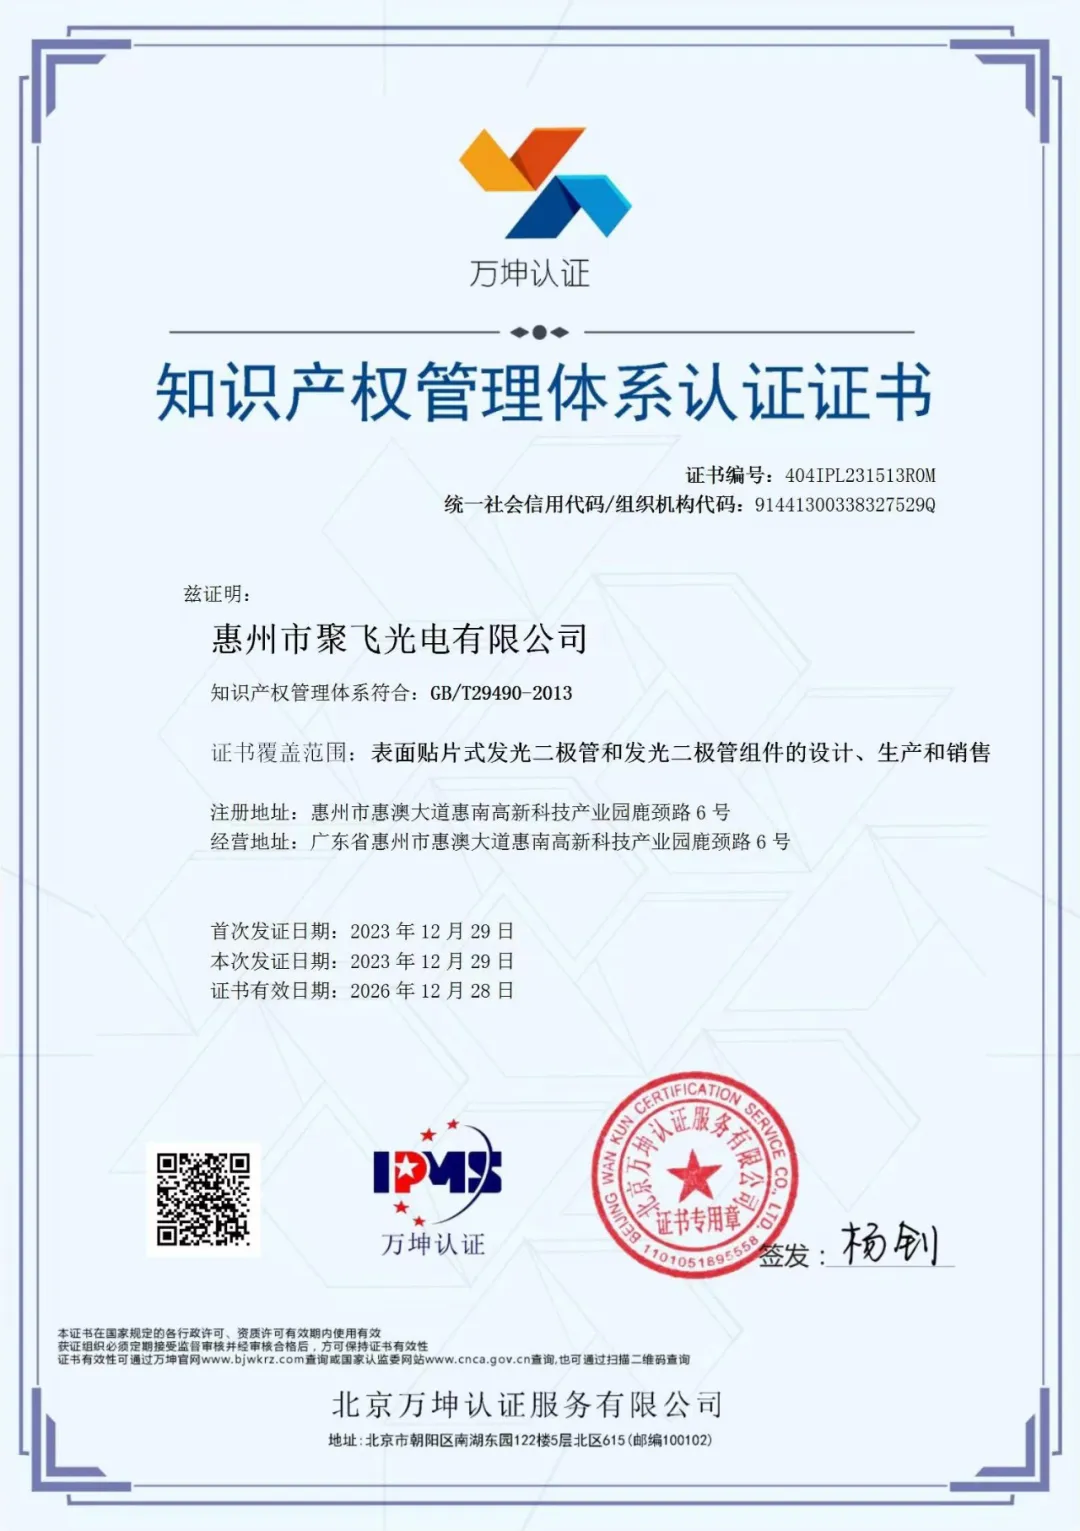 惠州聚飞光电通过企业知识产权管理规范认证